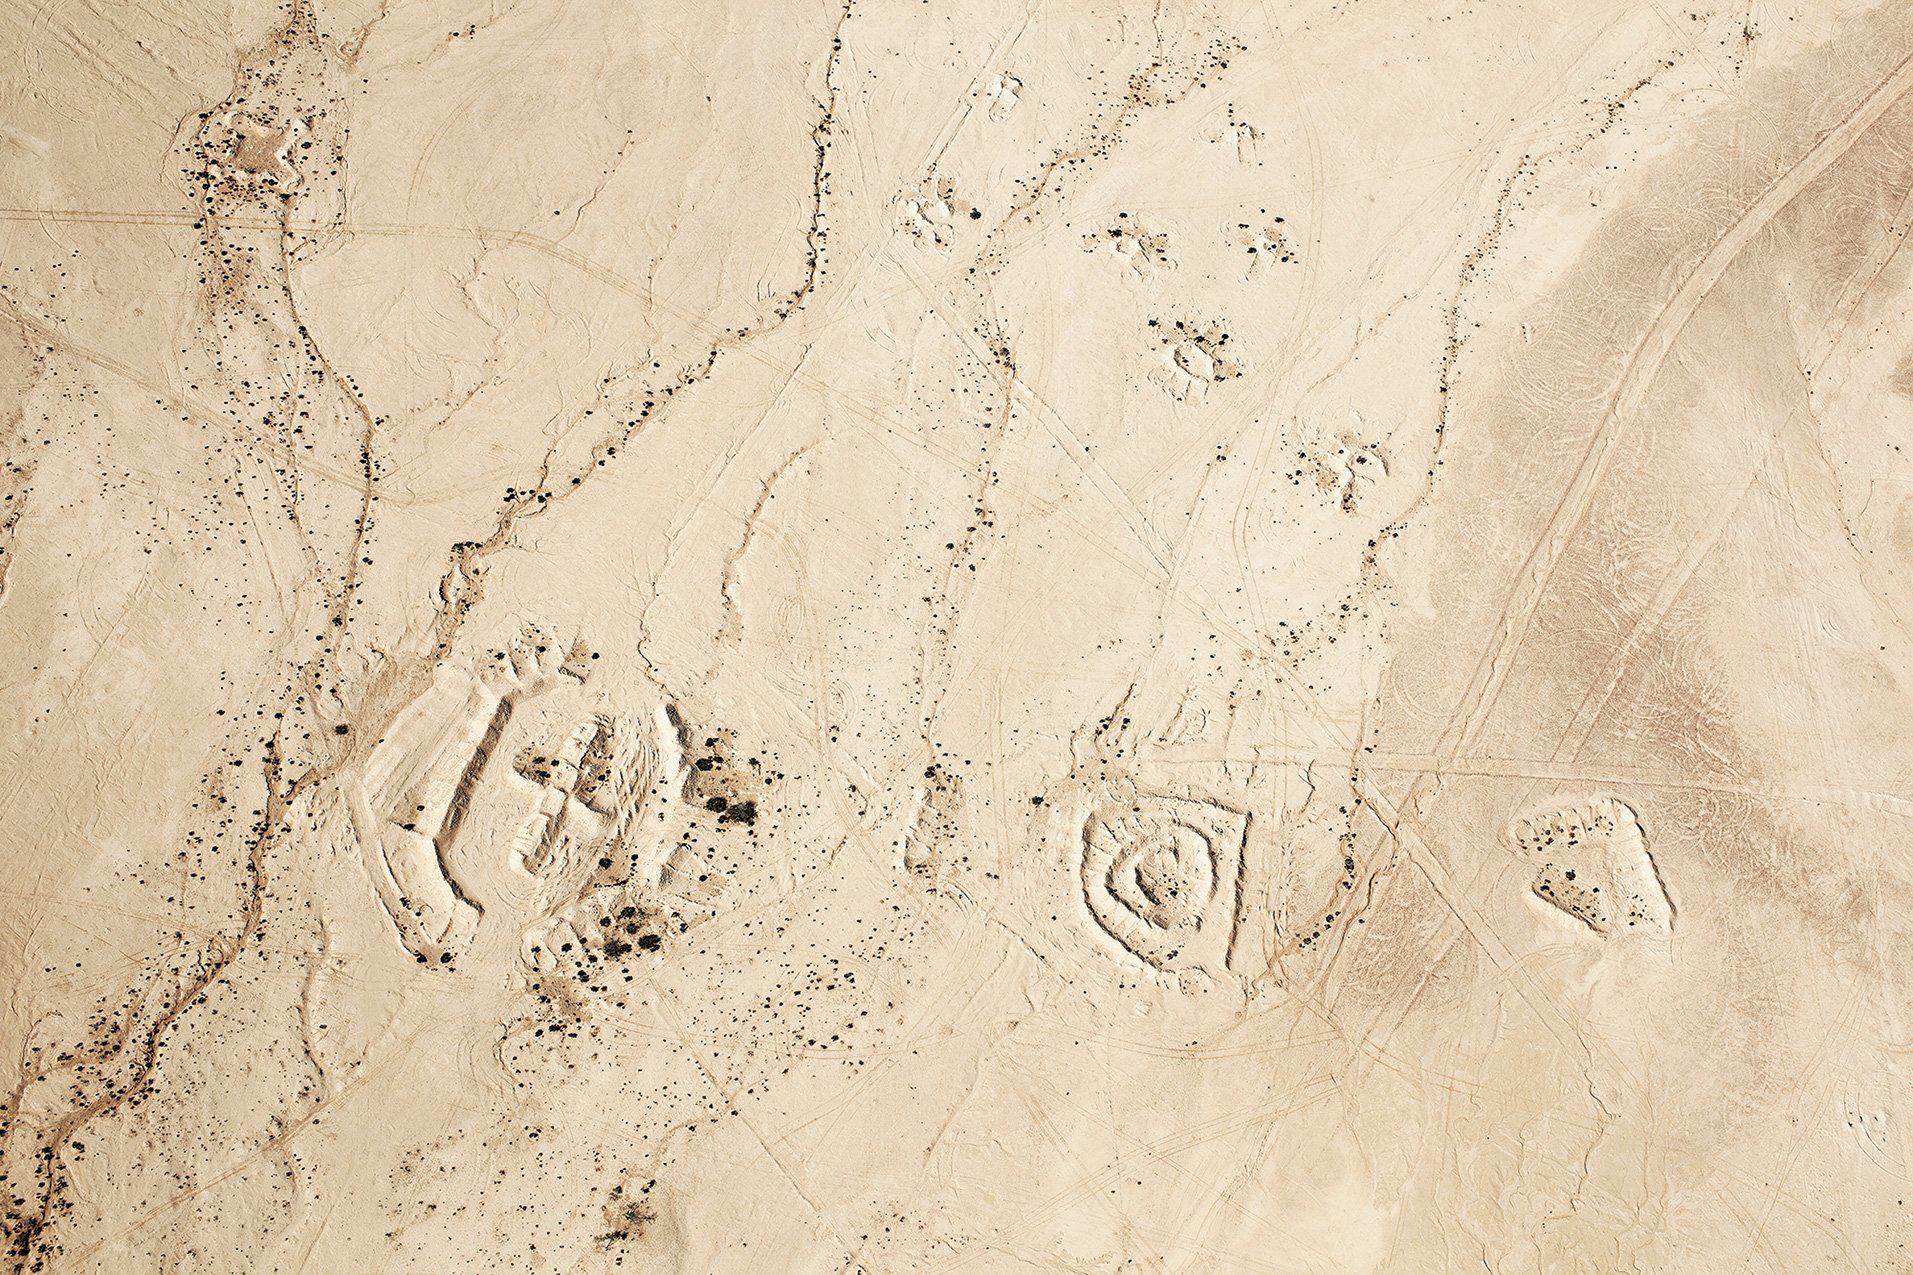 Latitude: 31° 12' 45" N / Longitude: 35° 11' 60" E, October 4, 2011, from the series Desert Bloom